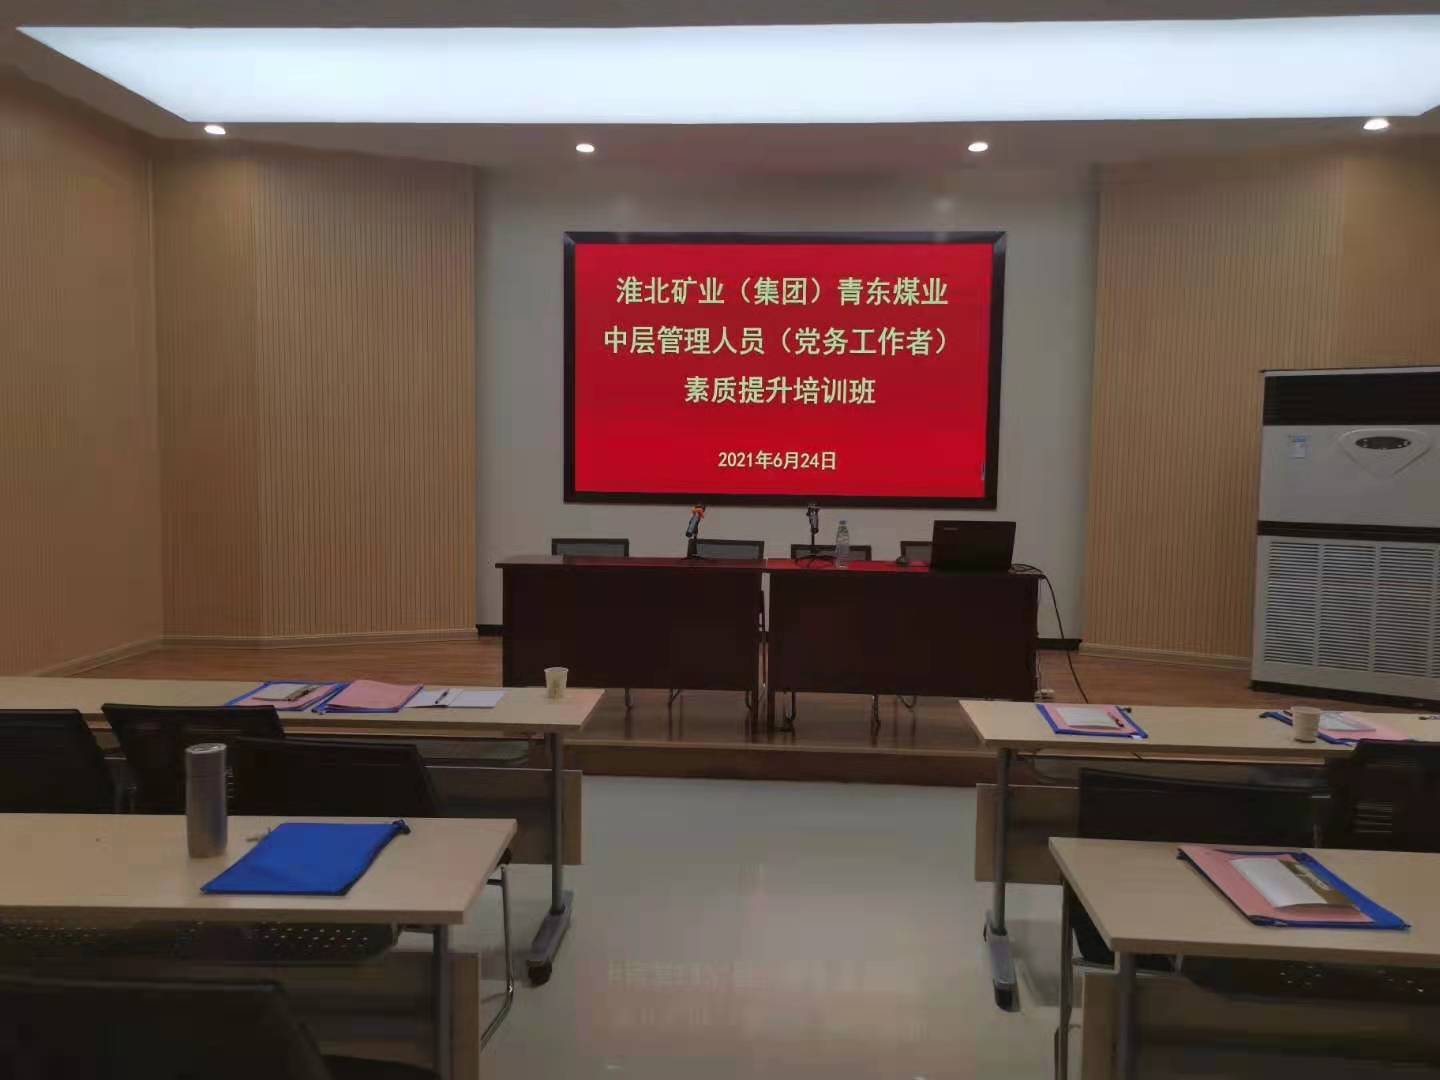 6月24日 刘志翔老师给安徽某矿业授课中层干部管理能升，课程完美交付顺利结束！